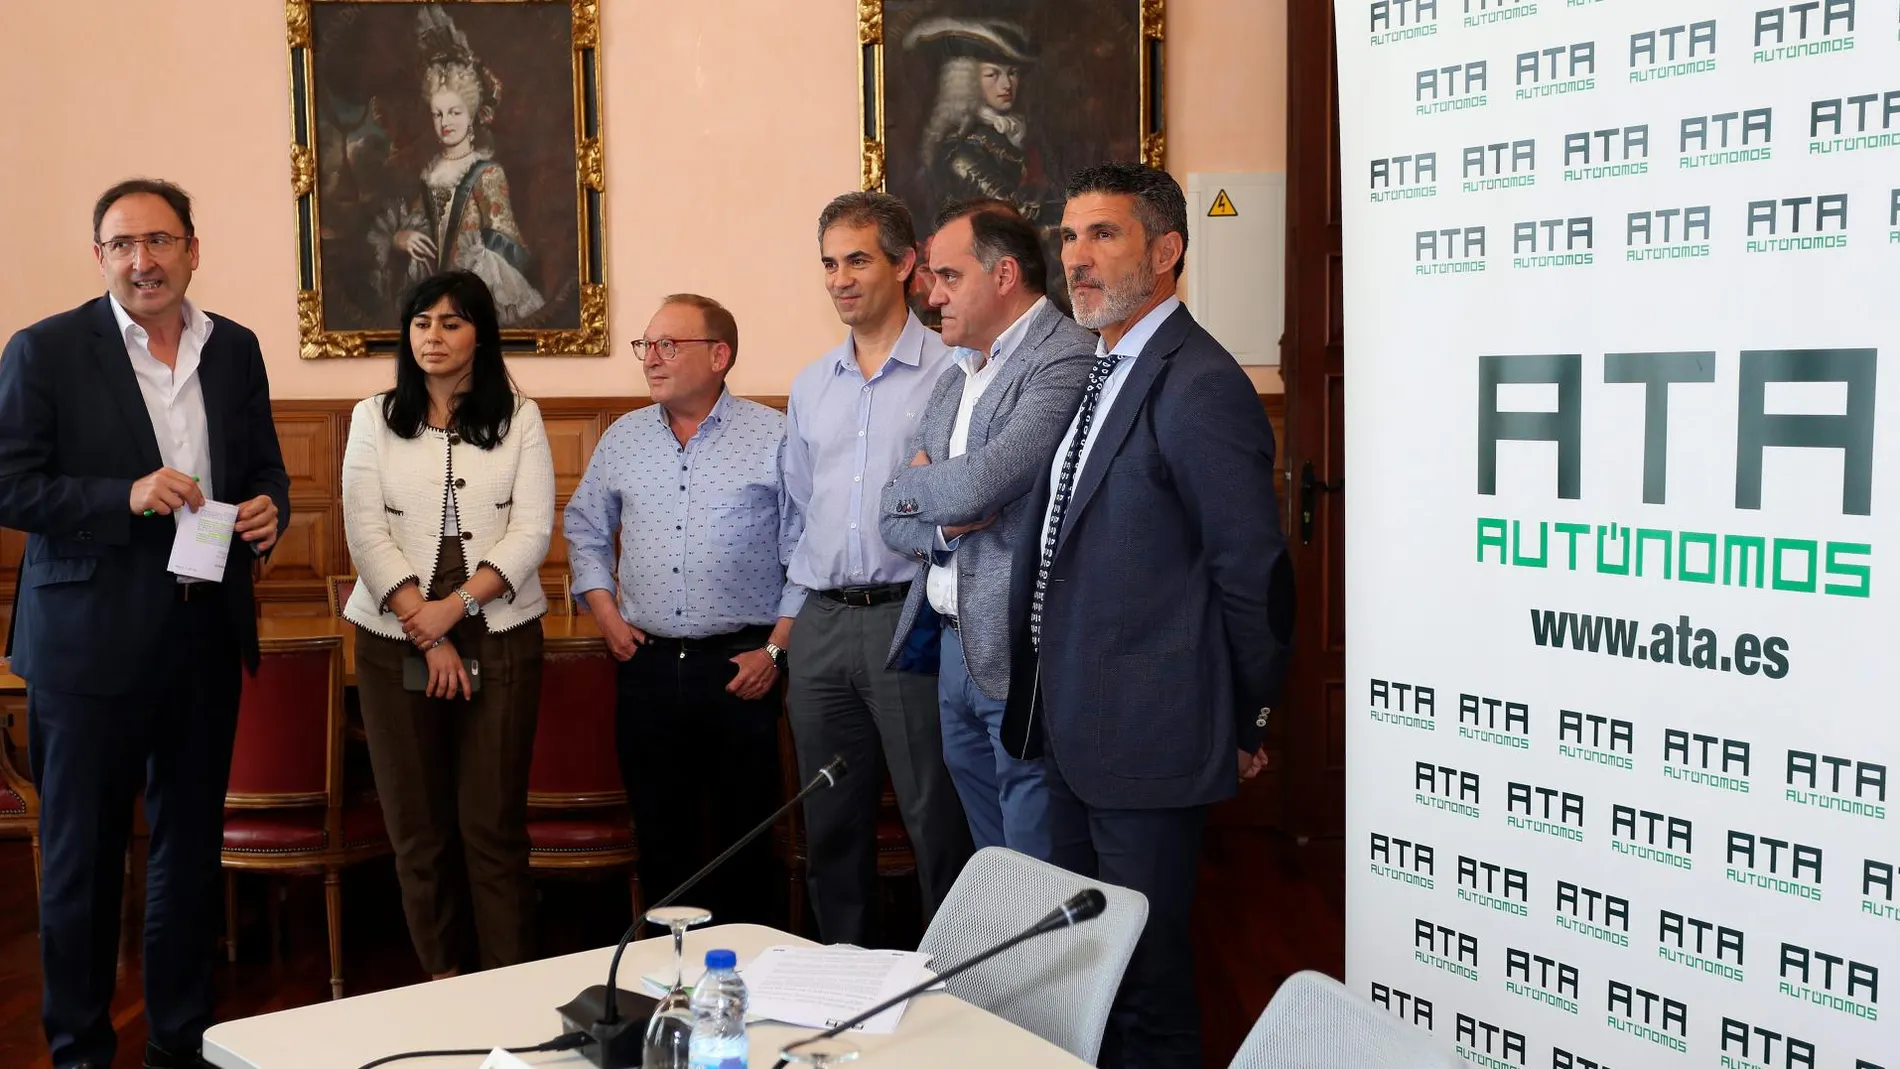 El alcalde en funciones de Palencia, Alfonso Polanco; el presidente regional y el secretario nacional de ATA, Domiciano Curiel y José Luis Perea, respectivamente, tras renovar el acuerdo